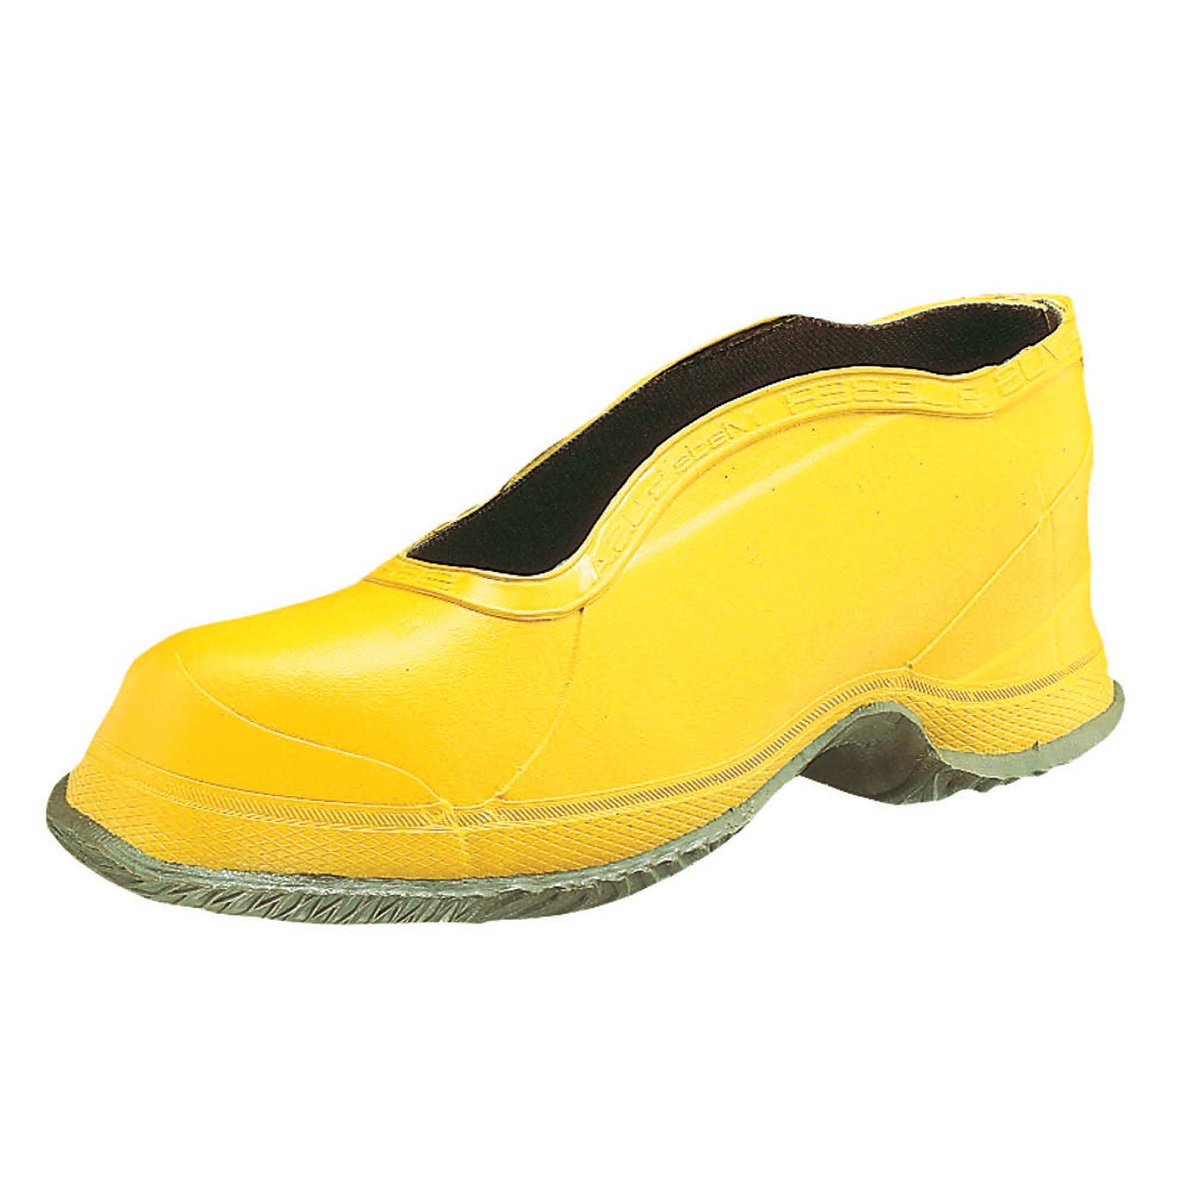 Honeywell Size 12 Salisbury Yellow Rubber Deep Heel Storm Overshoes With Fabric Lining